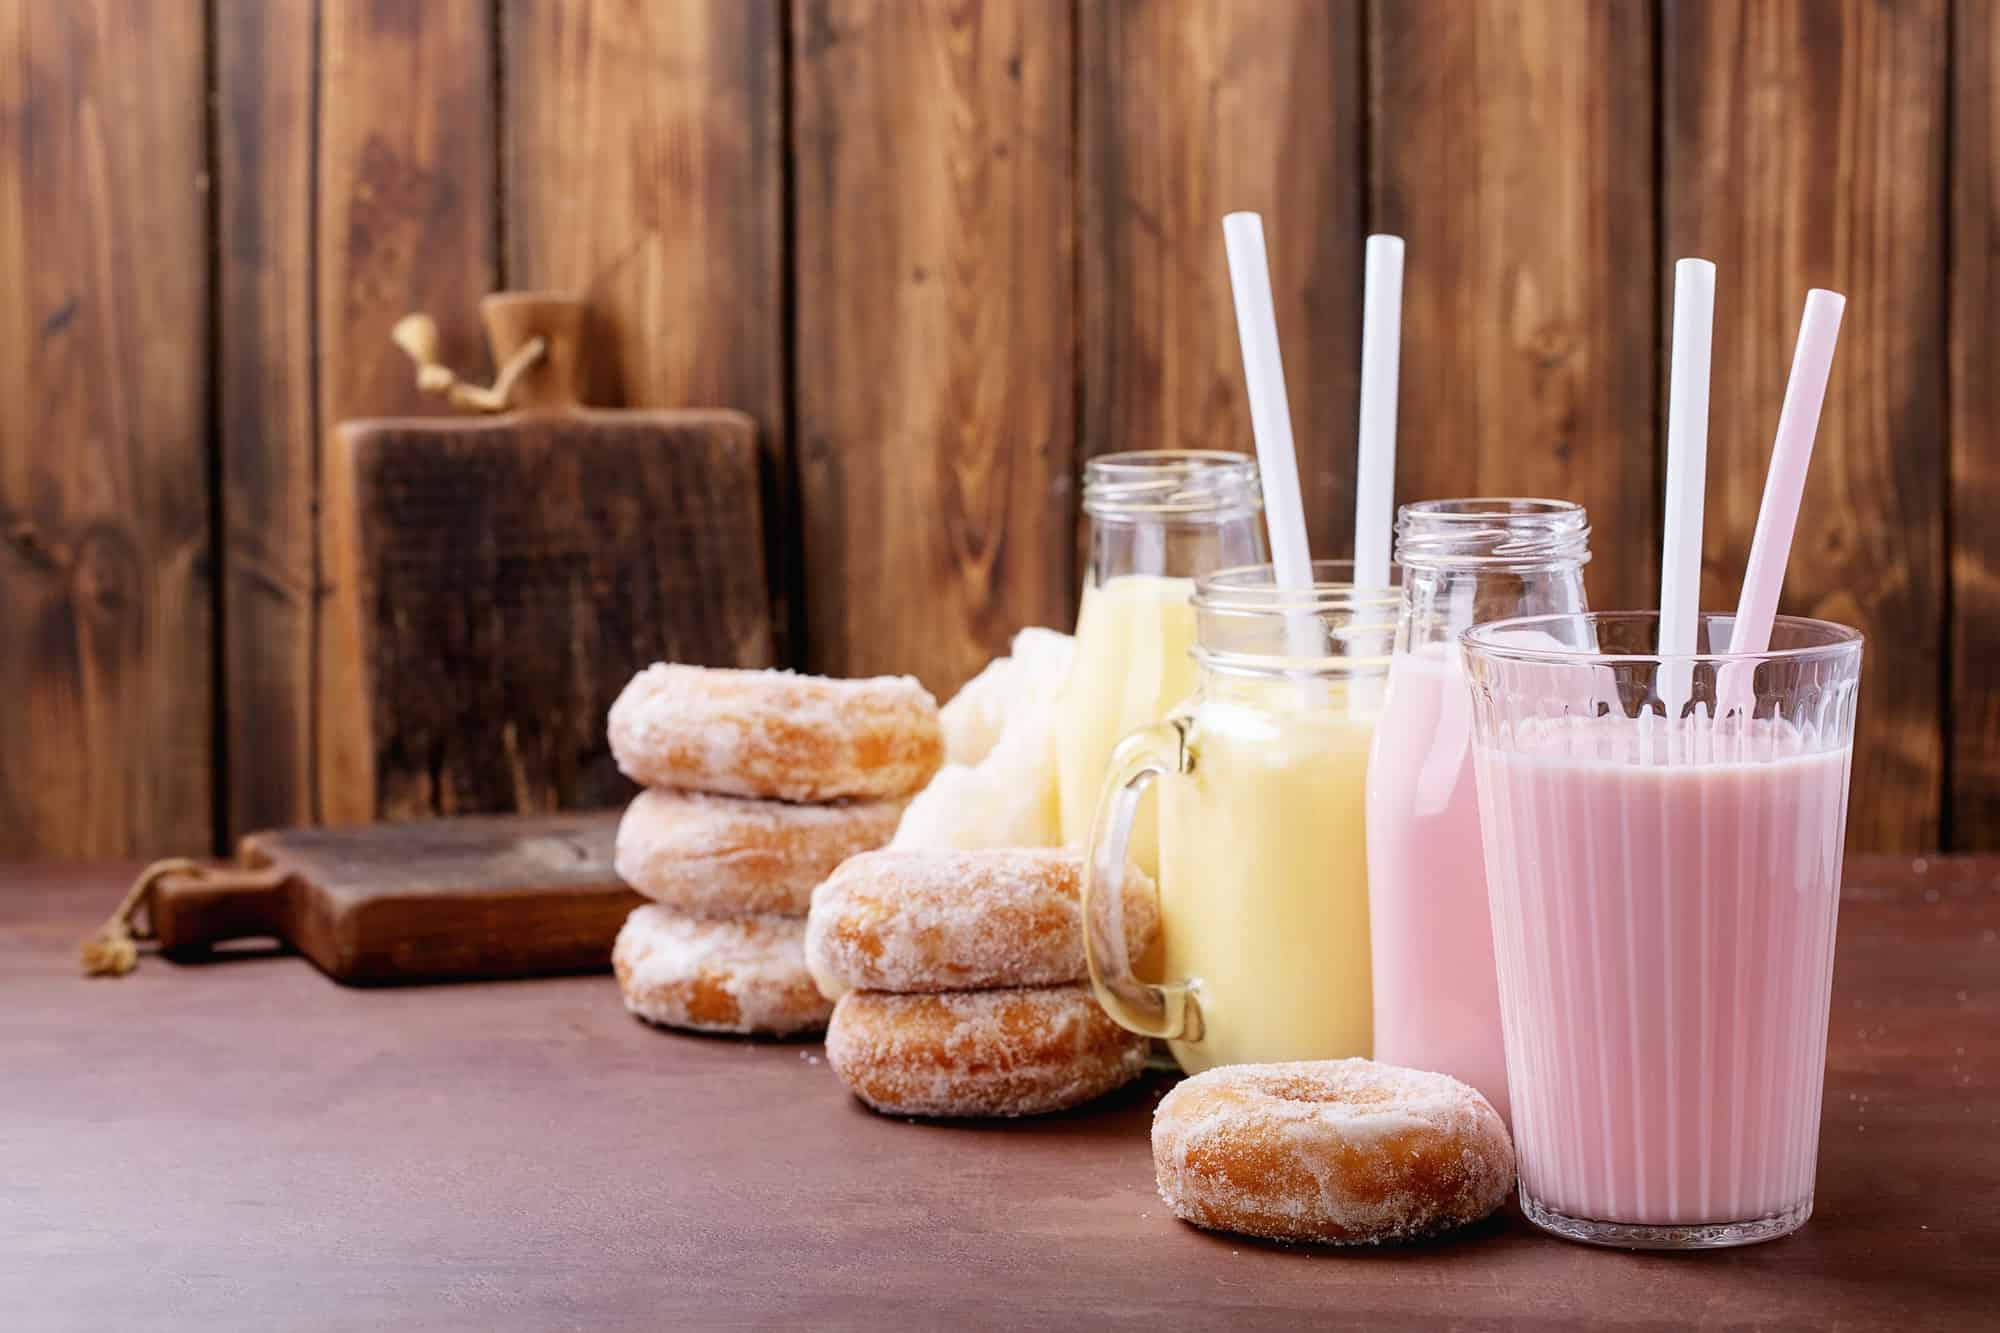 Sugar donuts served with milkshakes